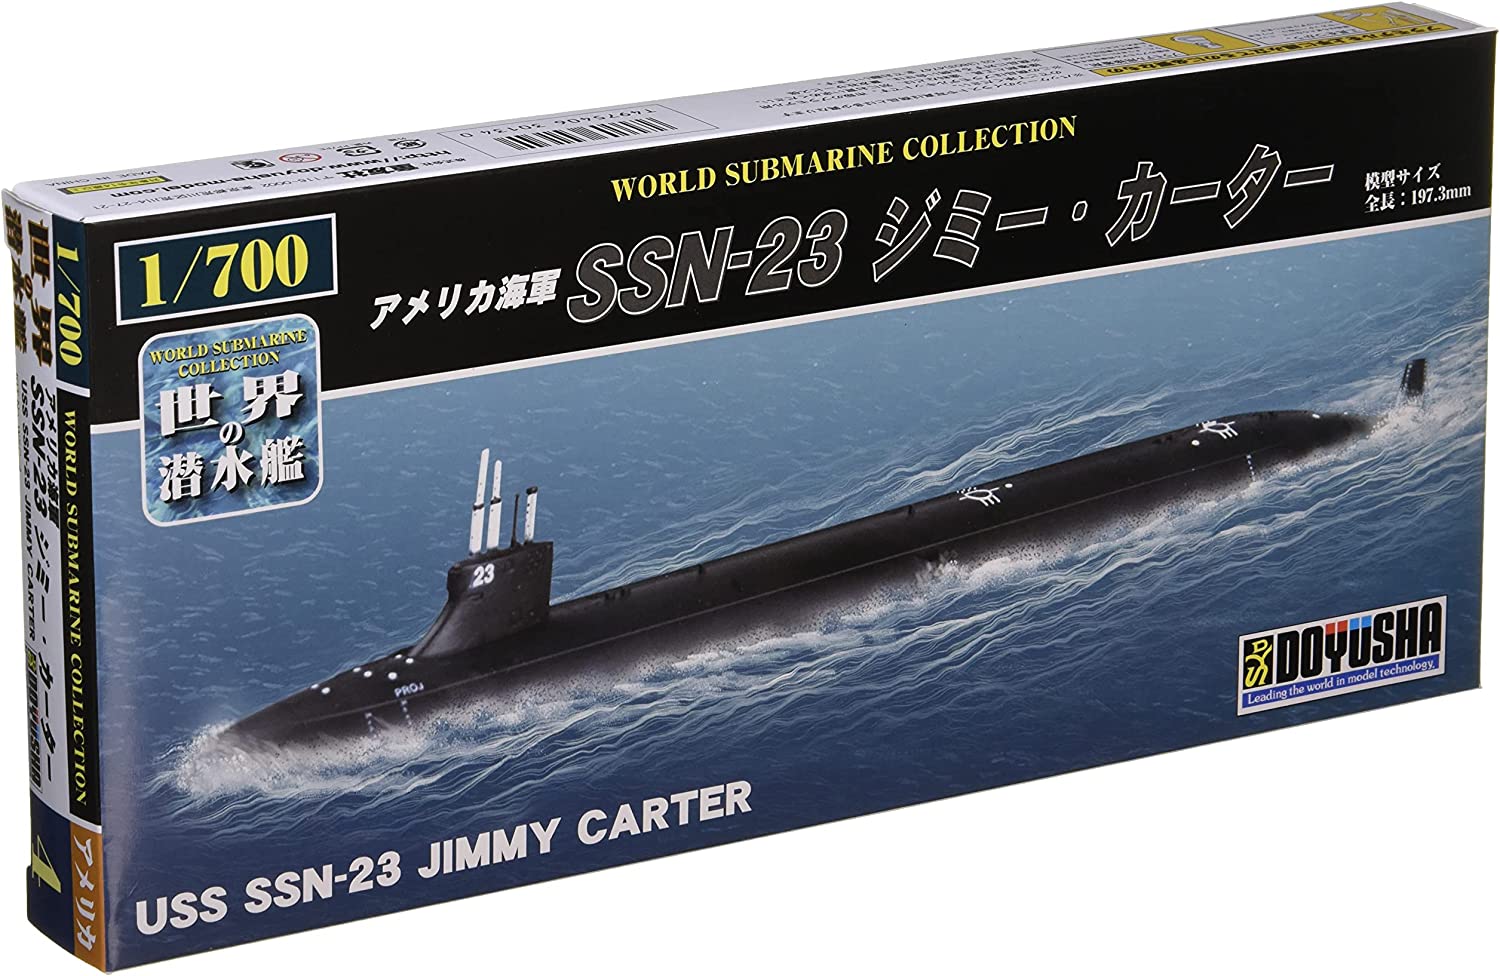 WSC-4 USS SSN-23 Jimmy Carter